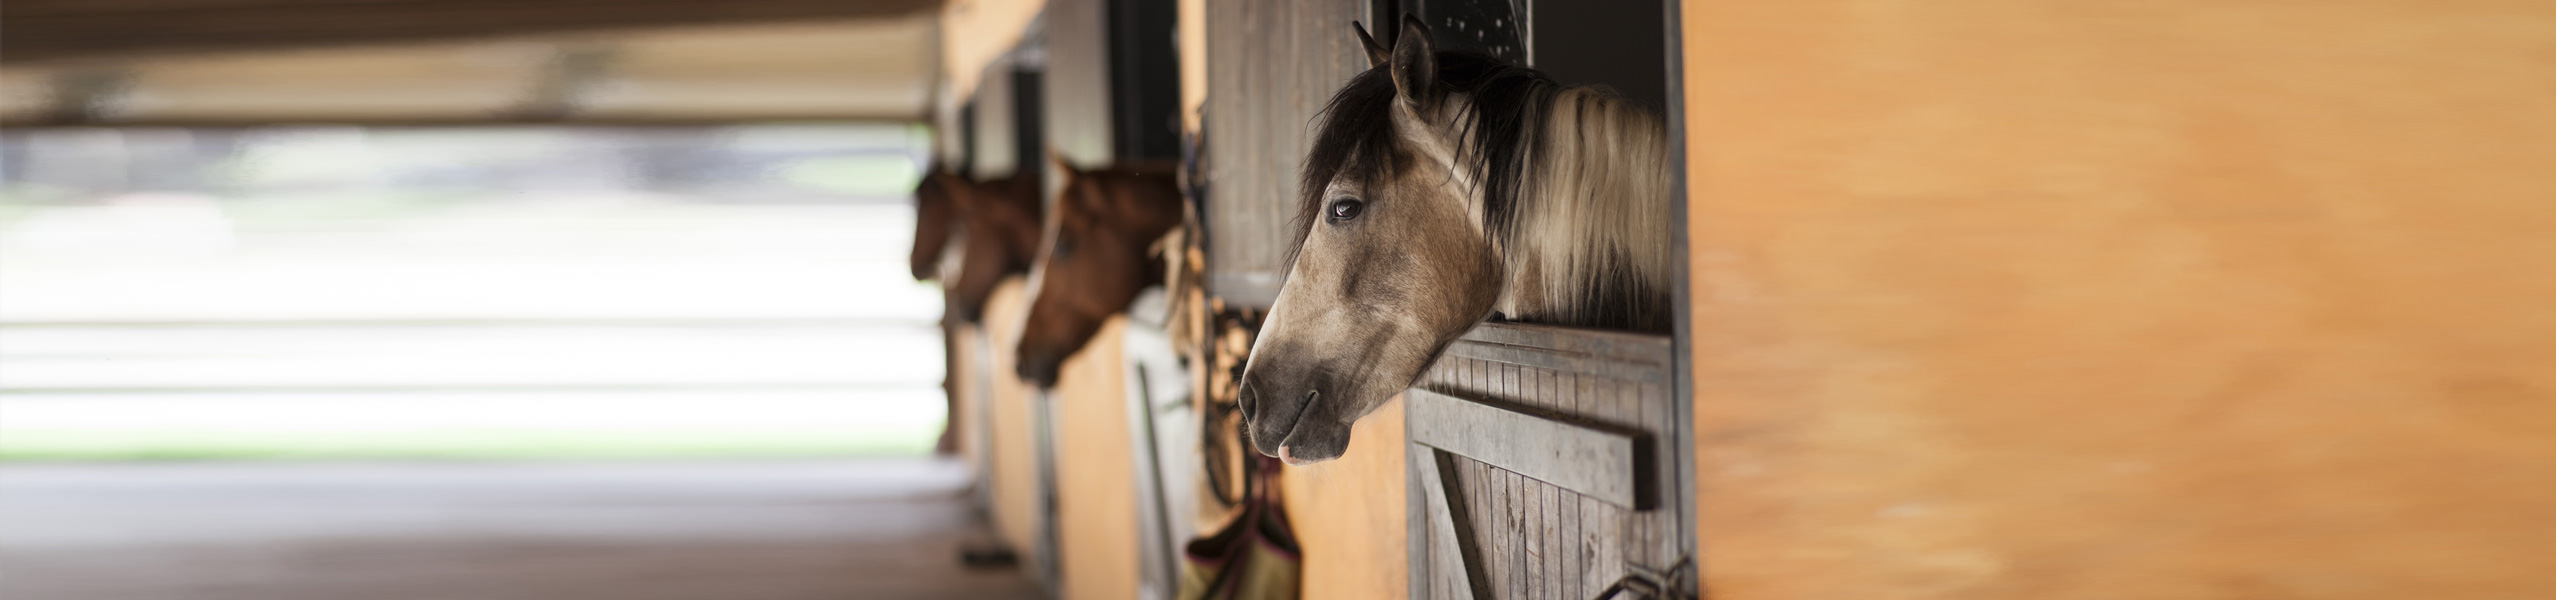 Sehnenschaden beim Pferd: behandeln und vorbeugen